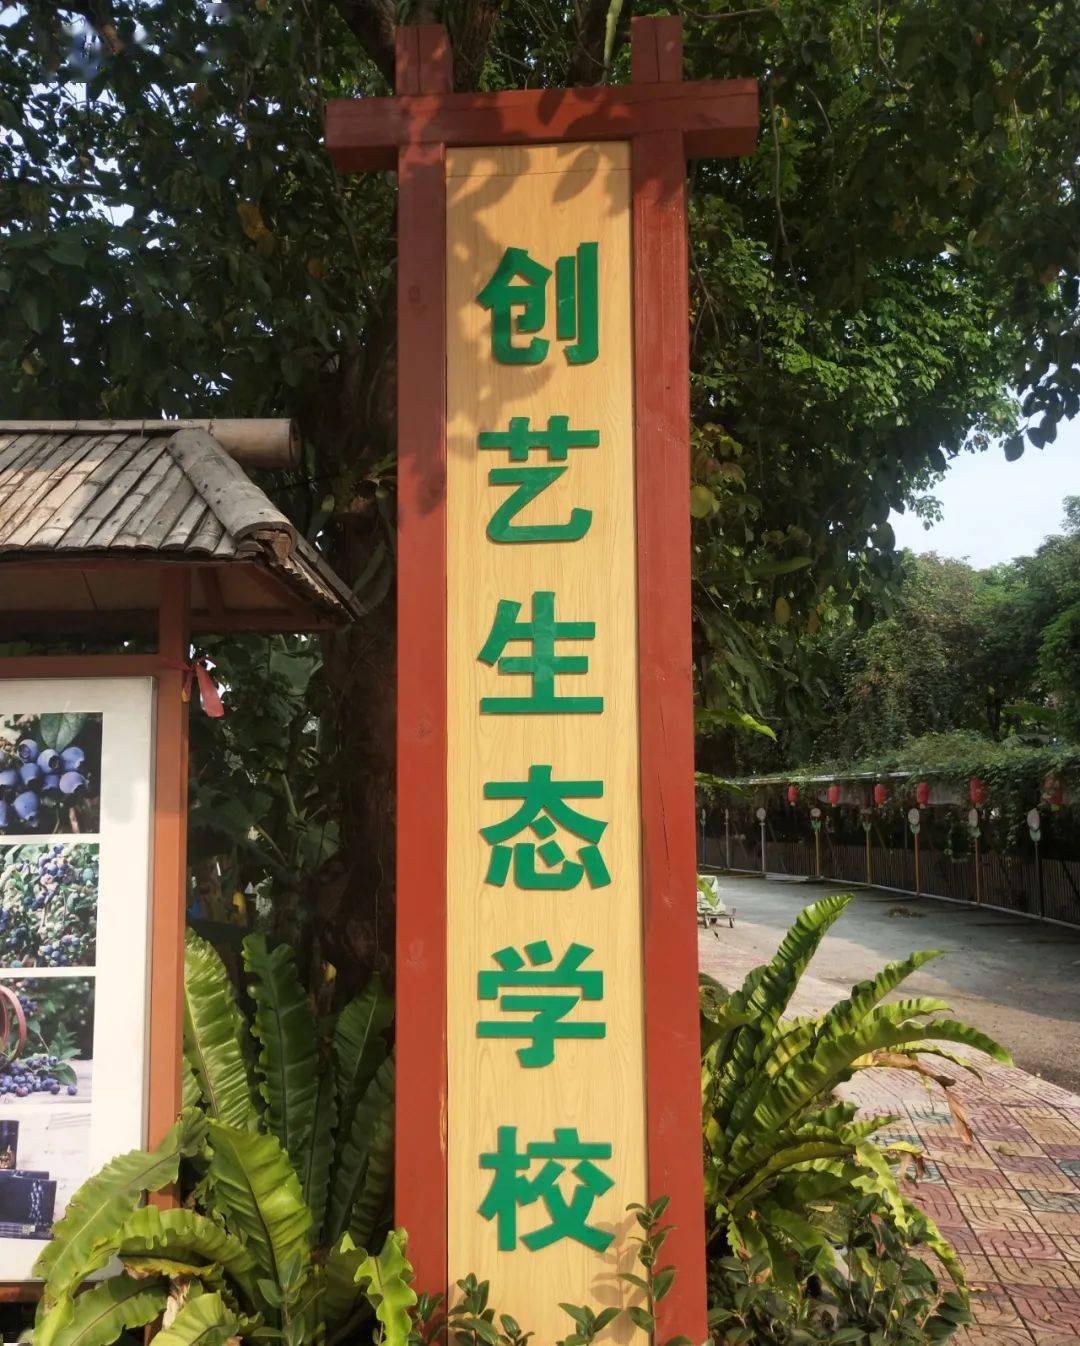 创艺生态学校坐落于麻涌创艺生态园内,2018年成功评选  东莞市中小